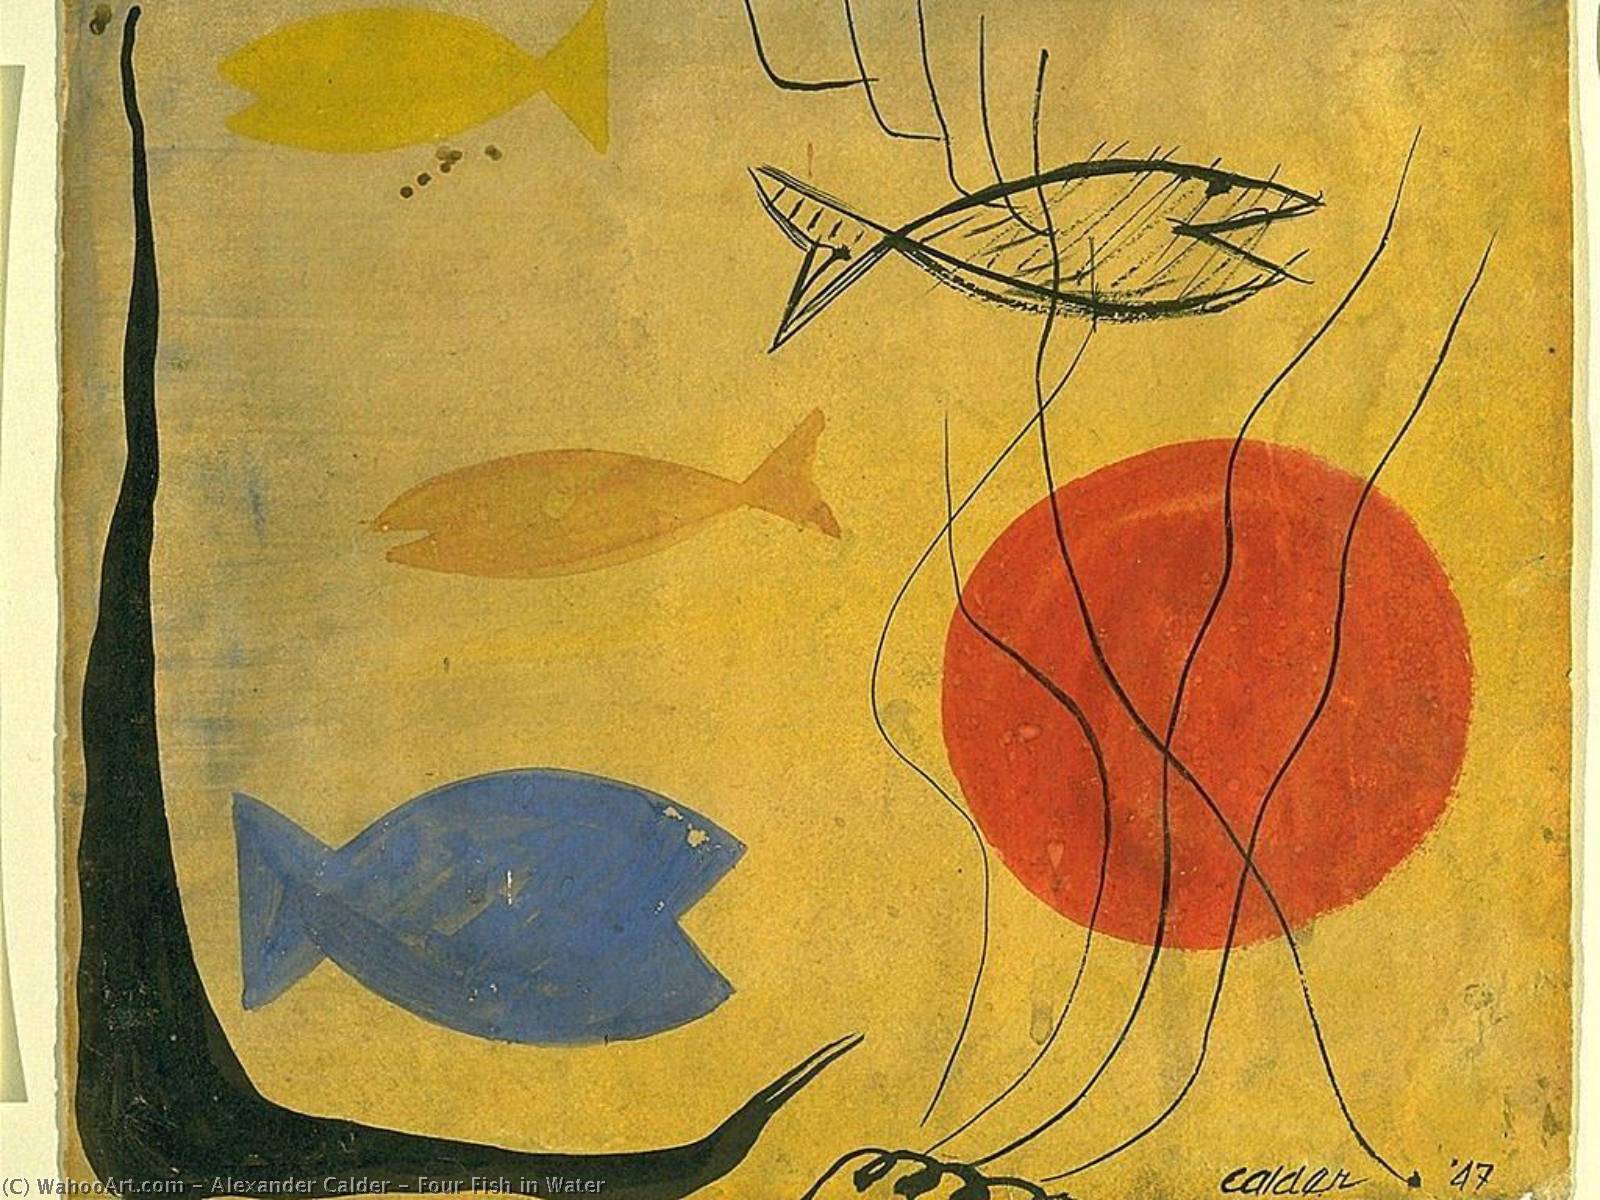 Wikoo.org - موسوعة الفنون الجميلة - اللوحة، العمل الفني Alexander Milne Calder - Four Fish in Water